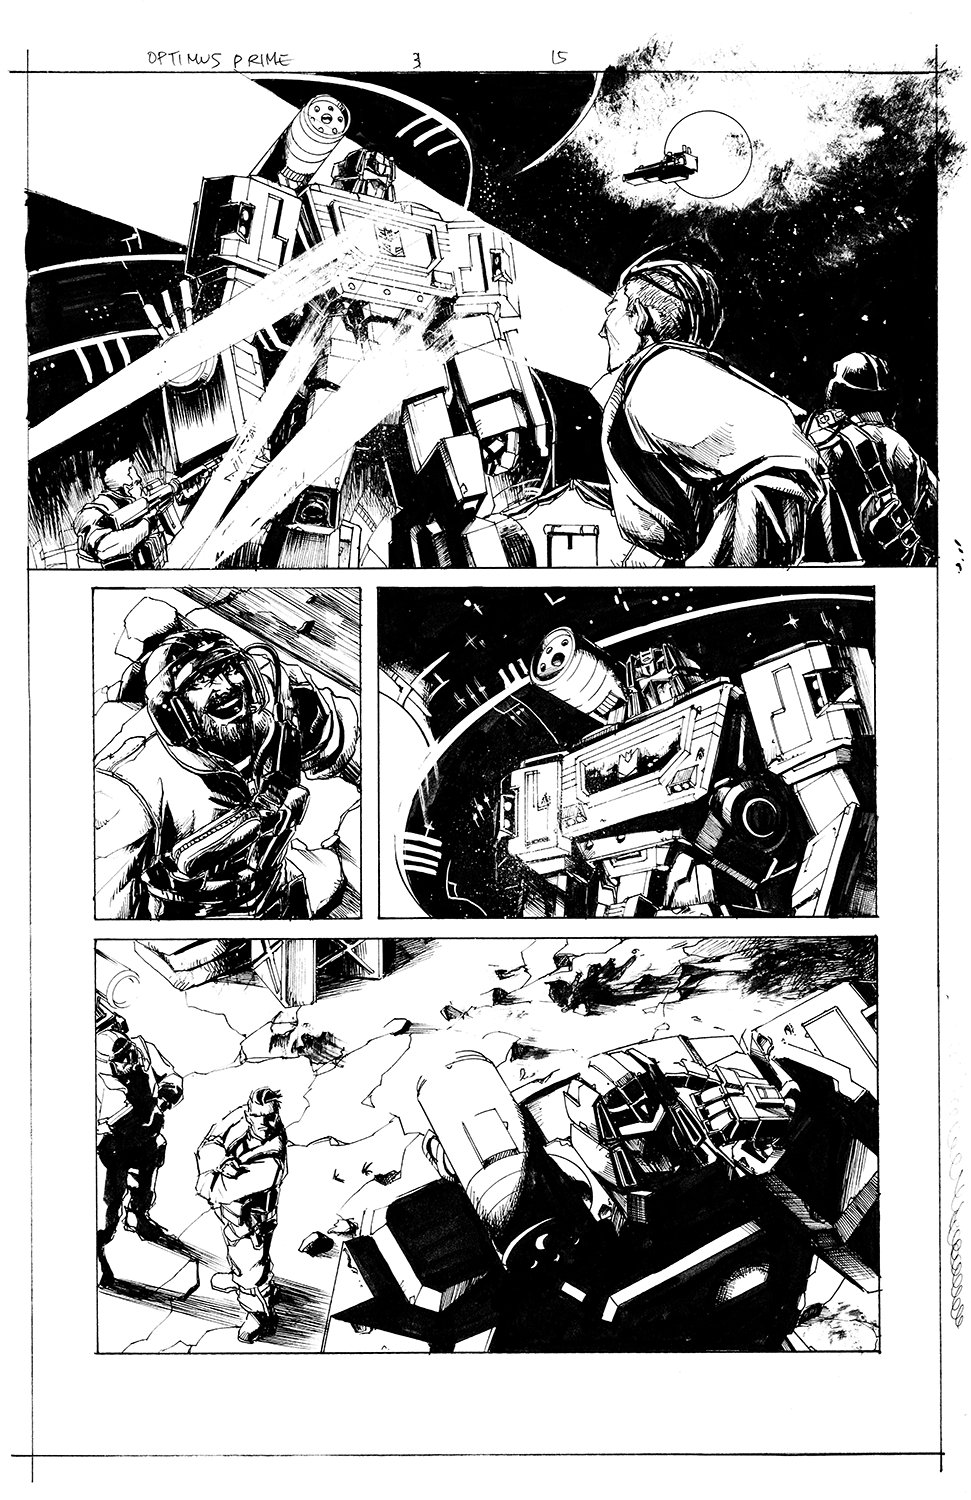 Optimus Prime #3 Page 15